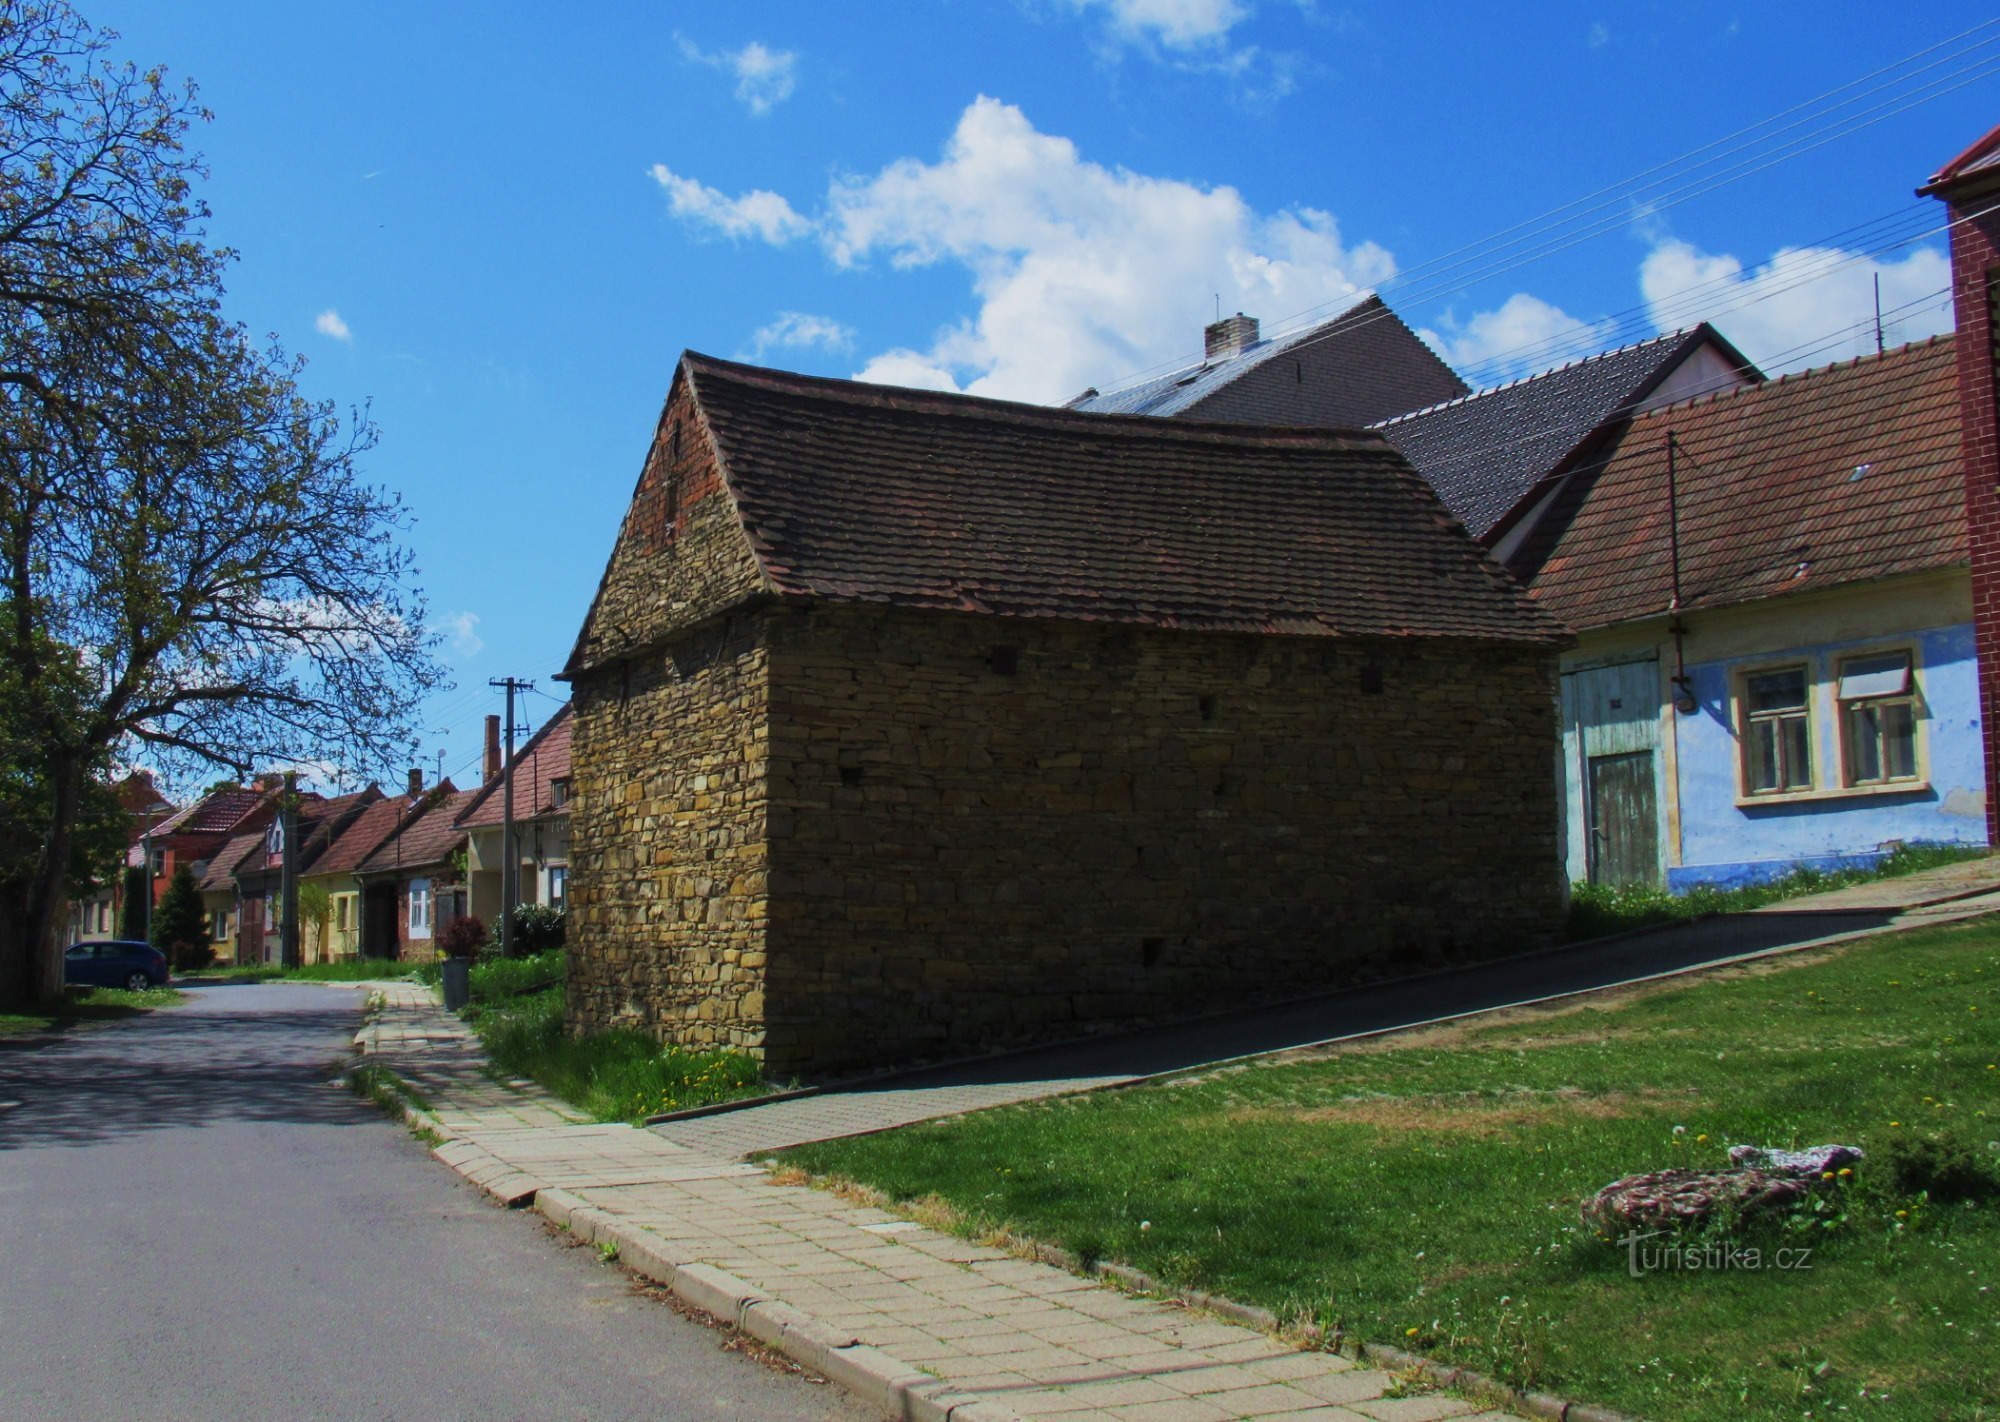 Casas de arquitetura popular na aldeia de Hrubá Vrbka em Slovácko